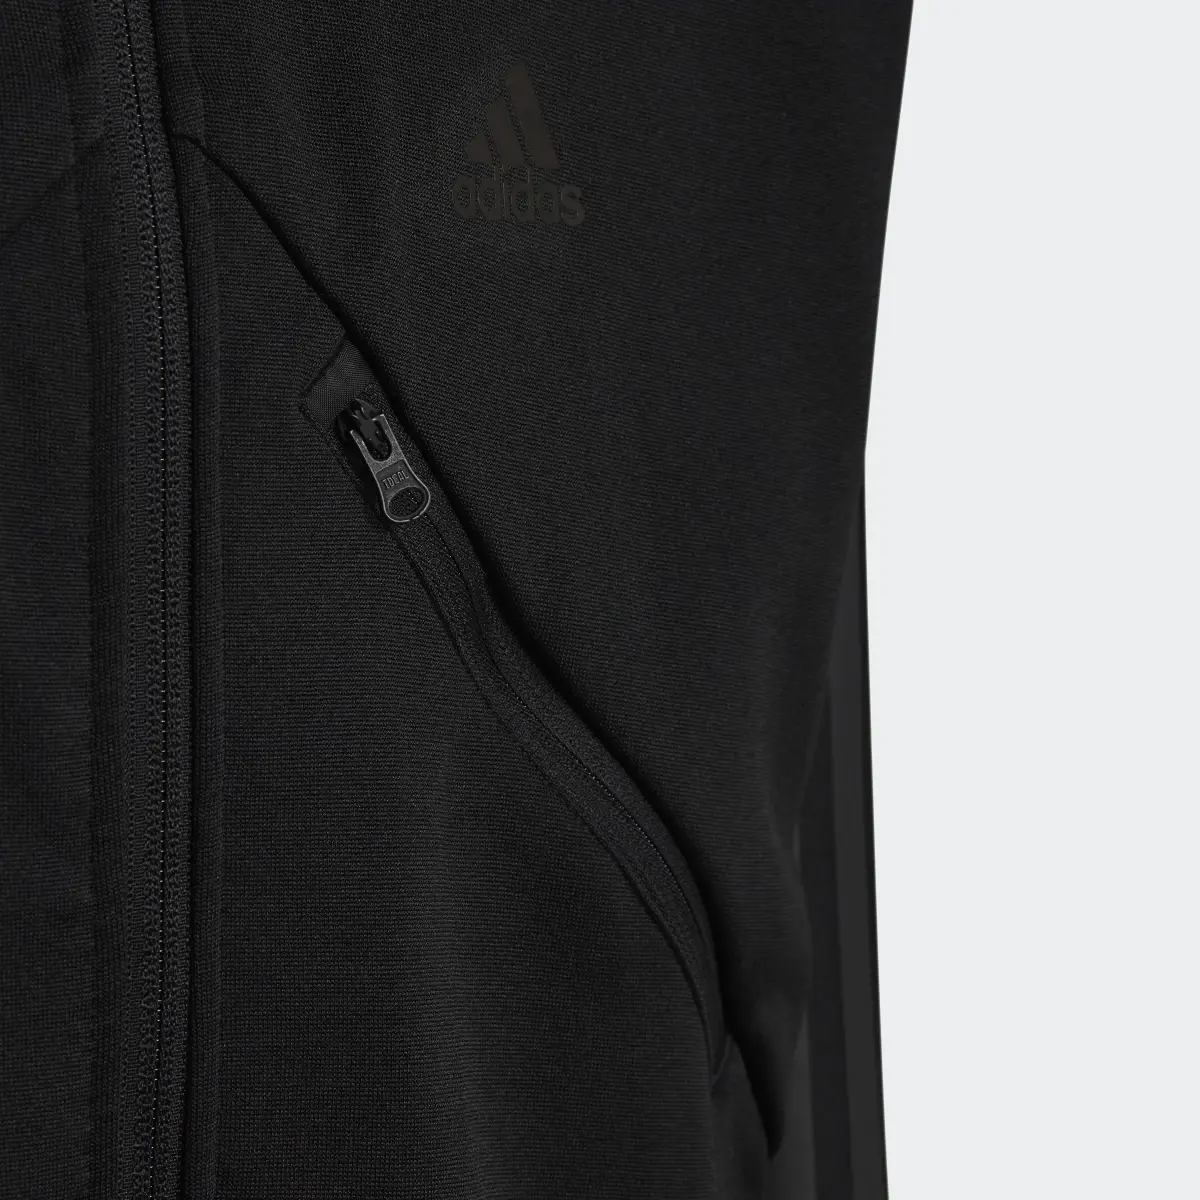 Adidas Track jacket Tiro Suit Up. 3